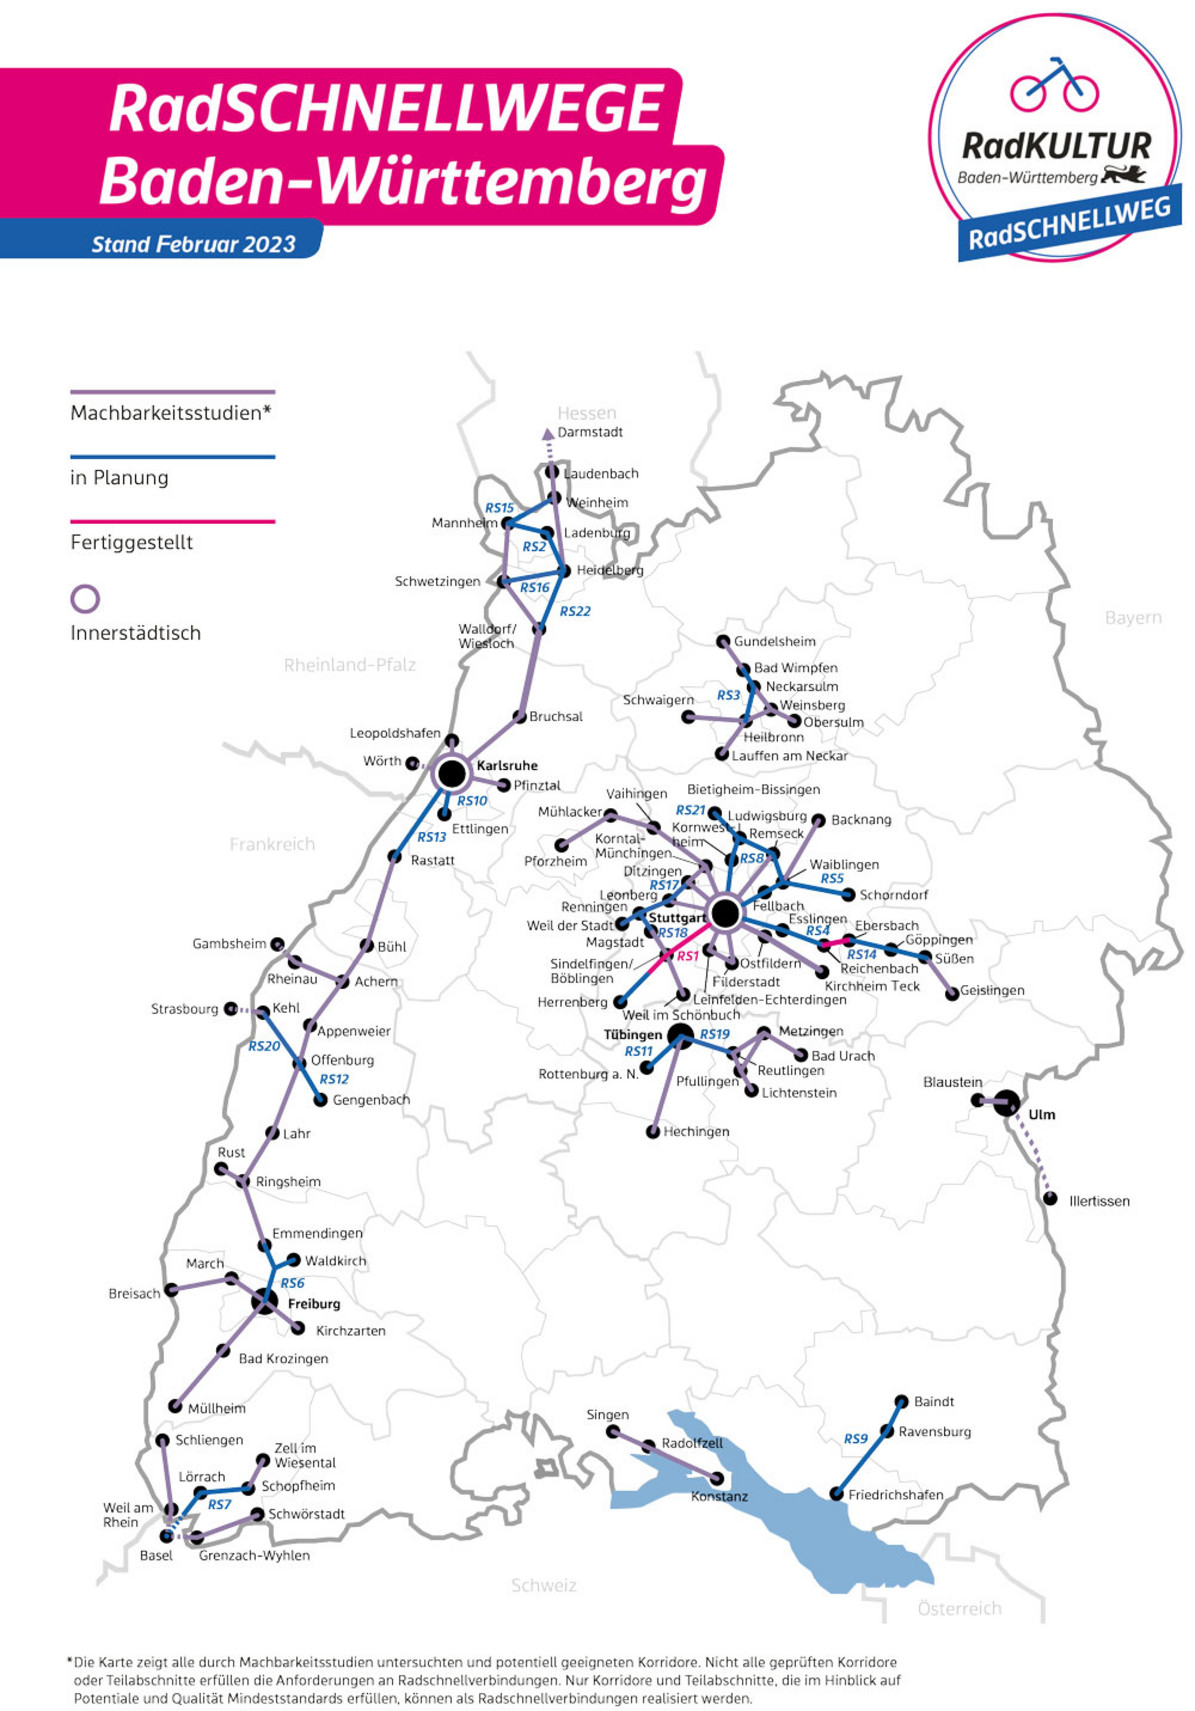 Karte von Baden-Württemberg mit verschiedenen Radschnellverbindungen im Land.